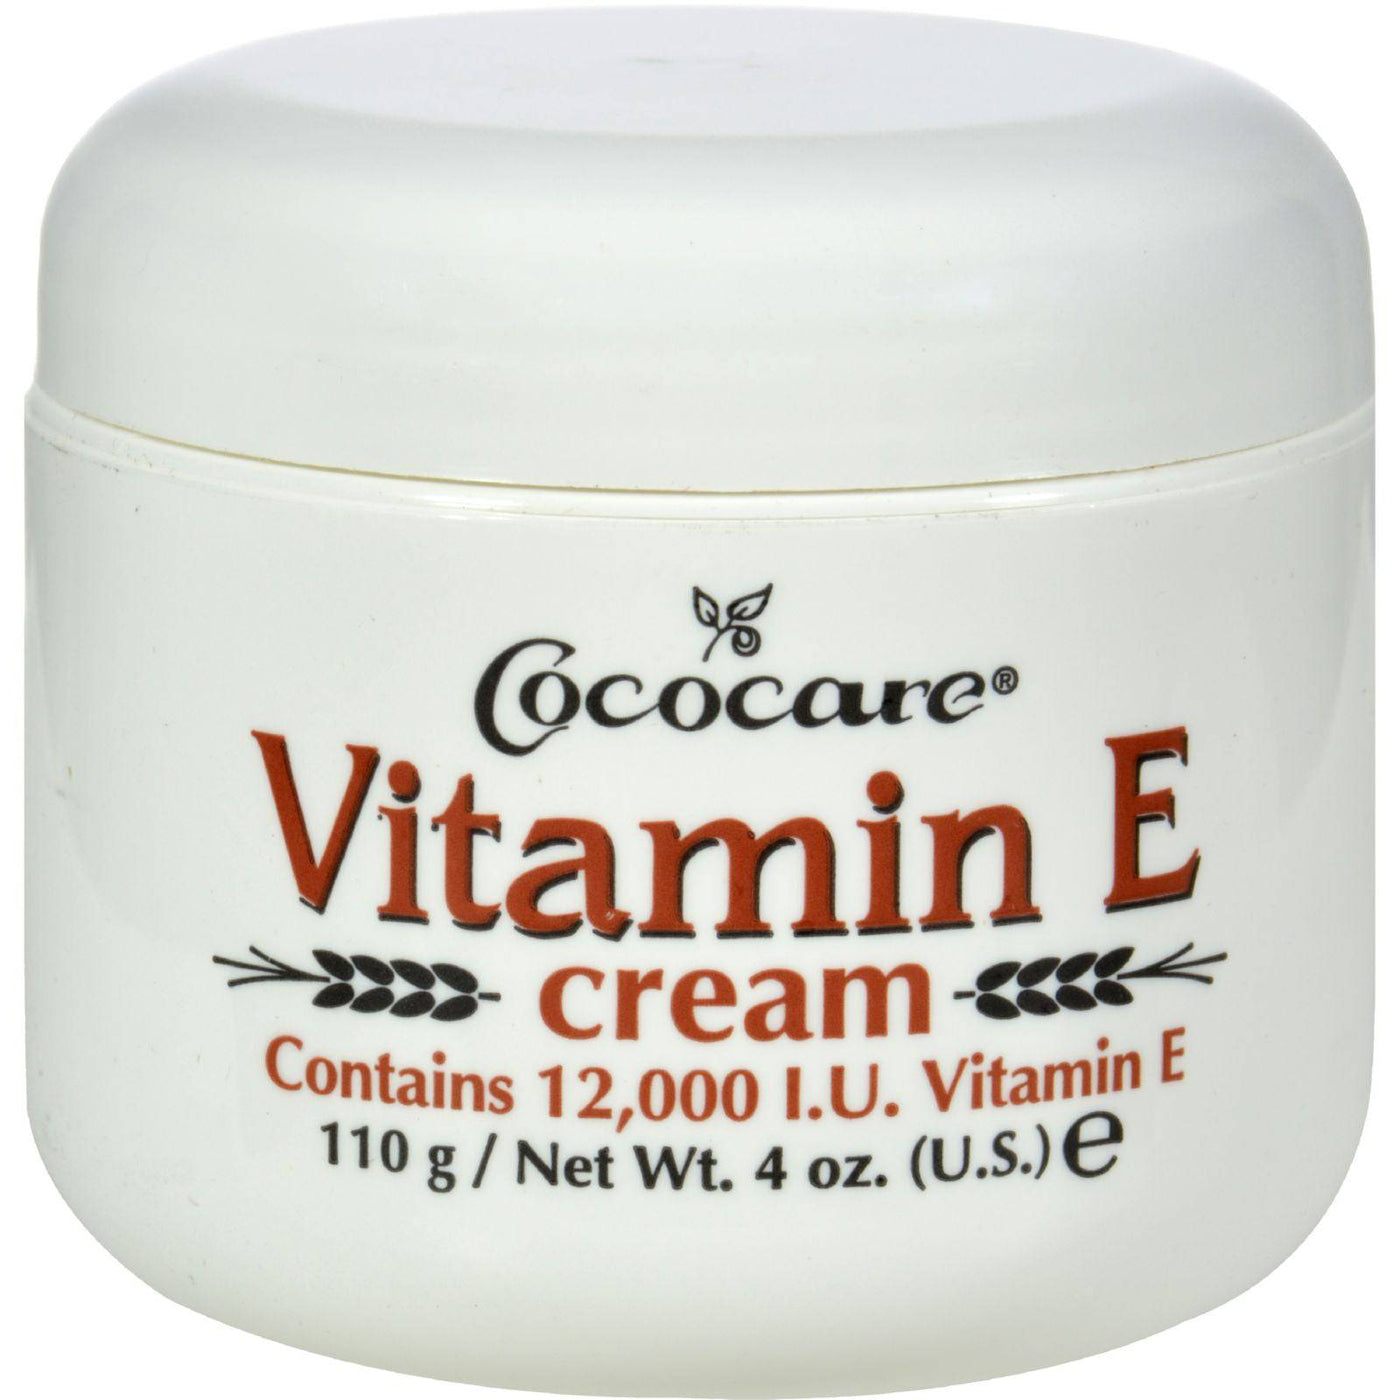 Buy Cococare Vitamin E Cream - 12000 Iu - 4 Oz  at OnlyNaturals.us